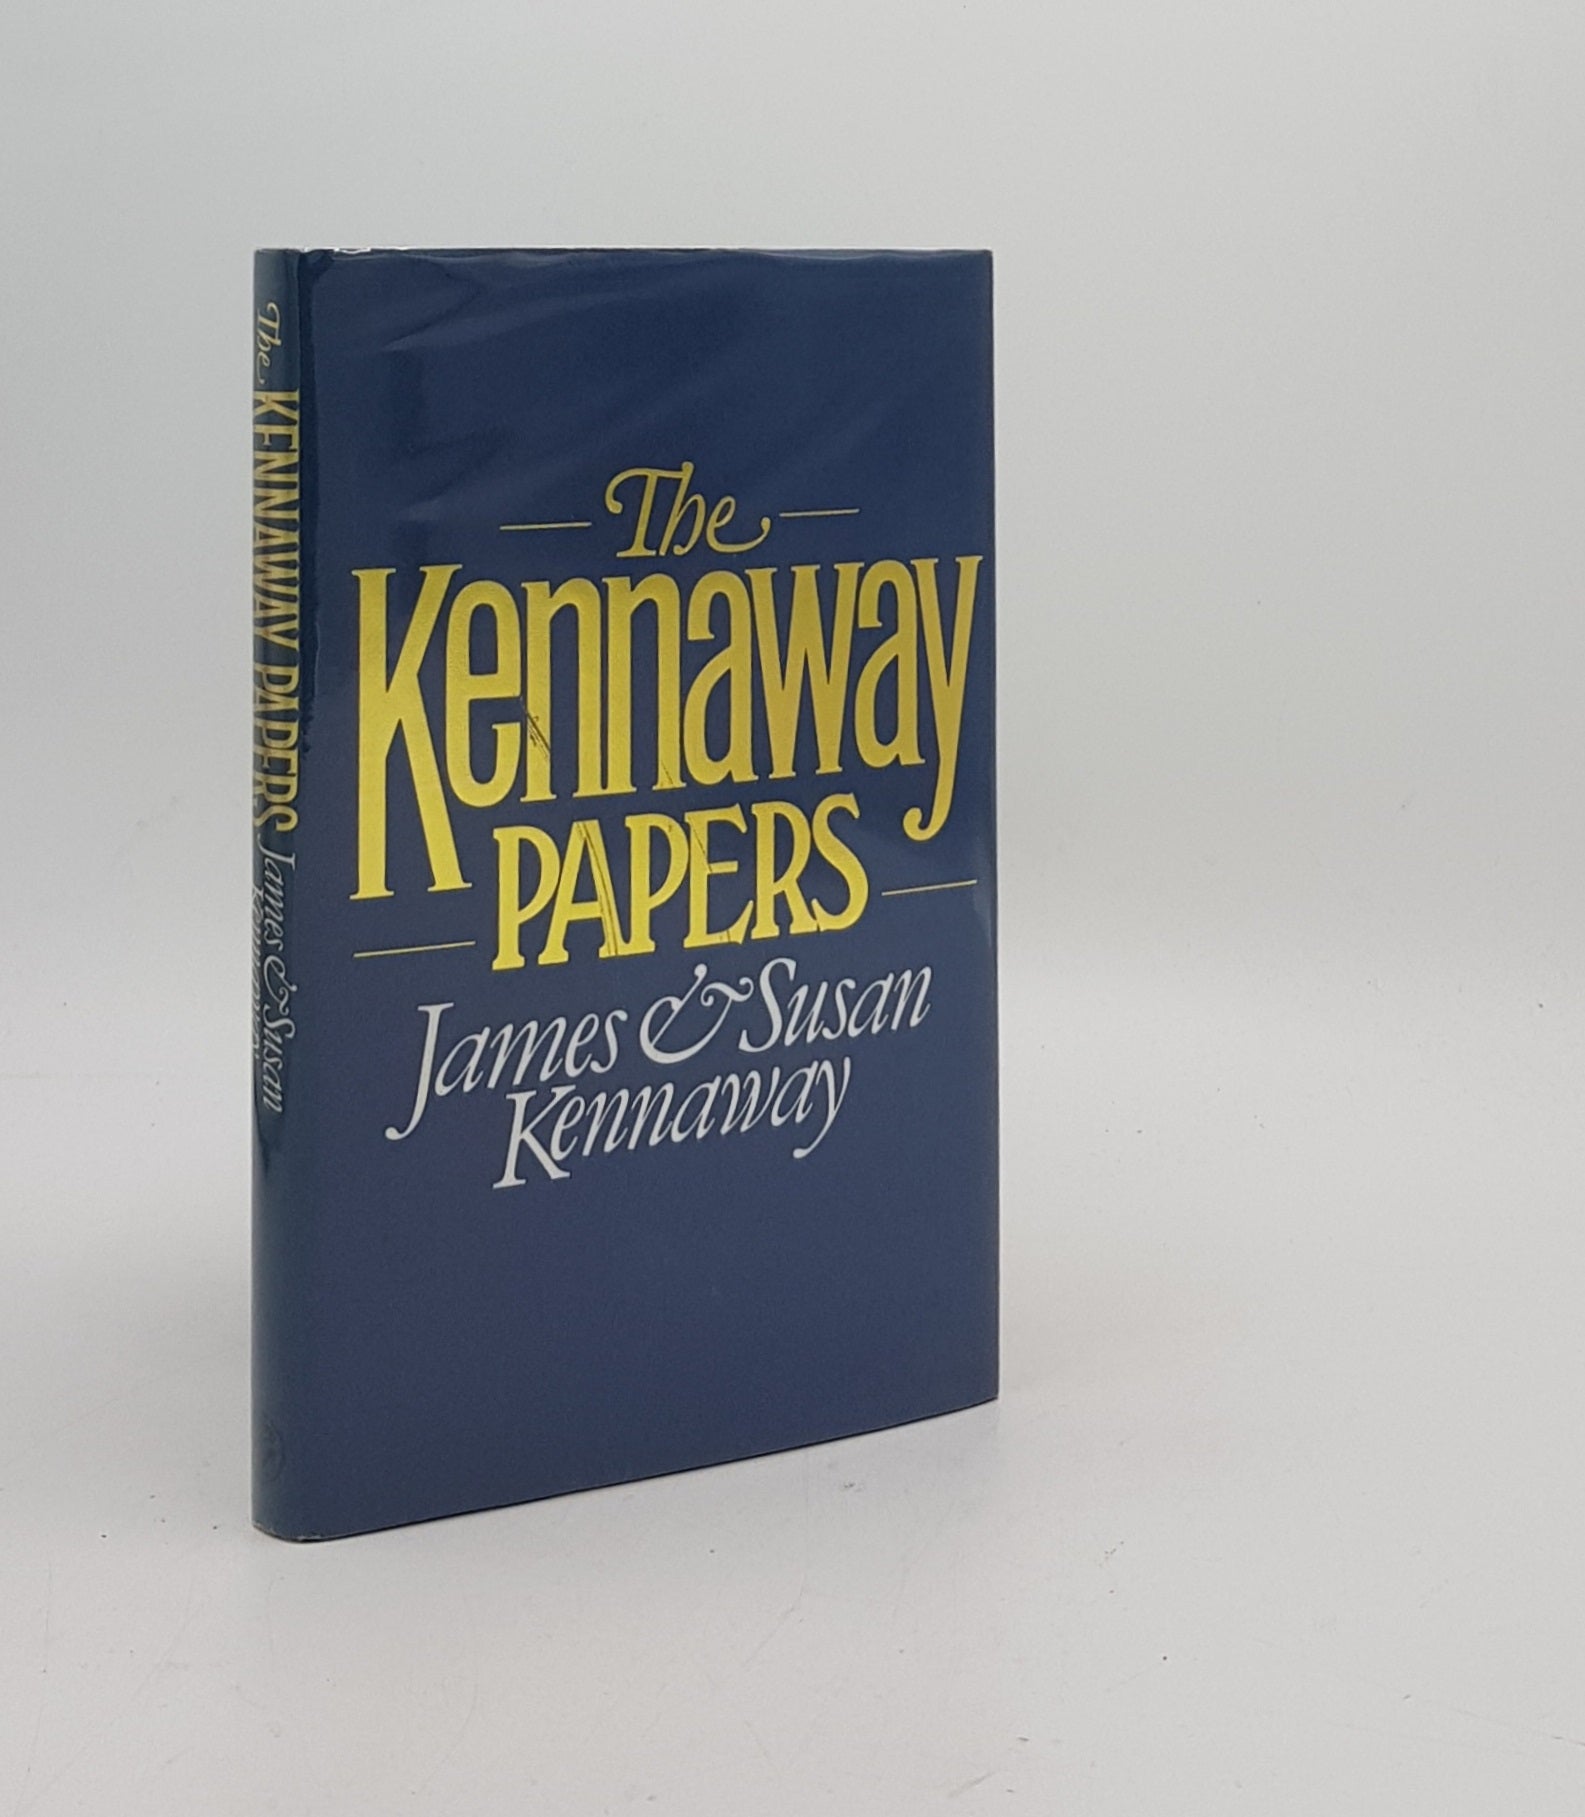 KENNAWAY James, KENNAWAY Susan - The Kennaway Papers